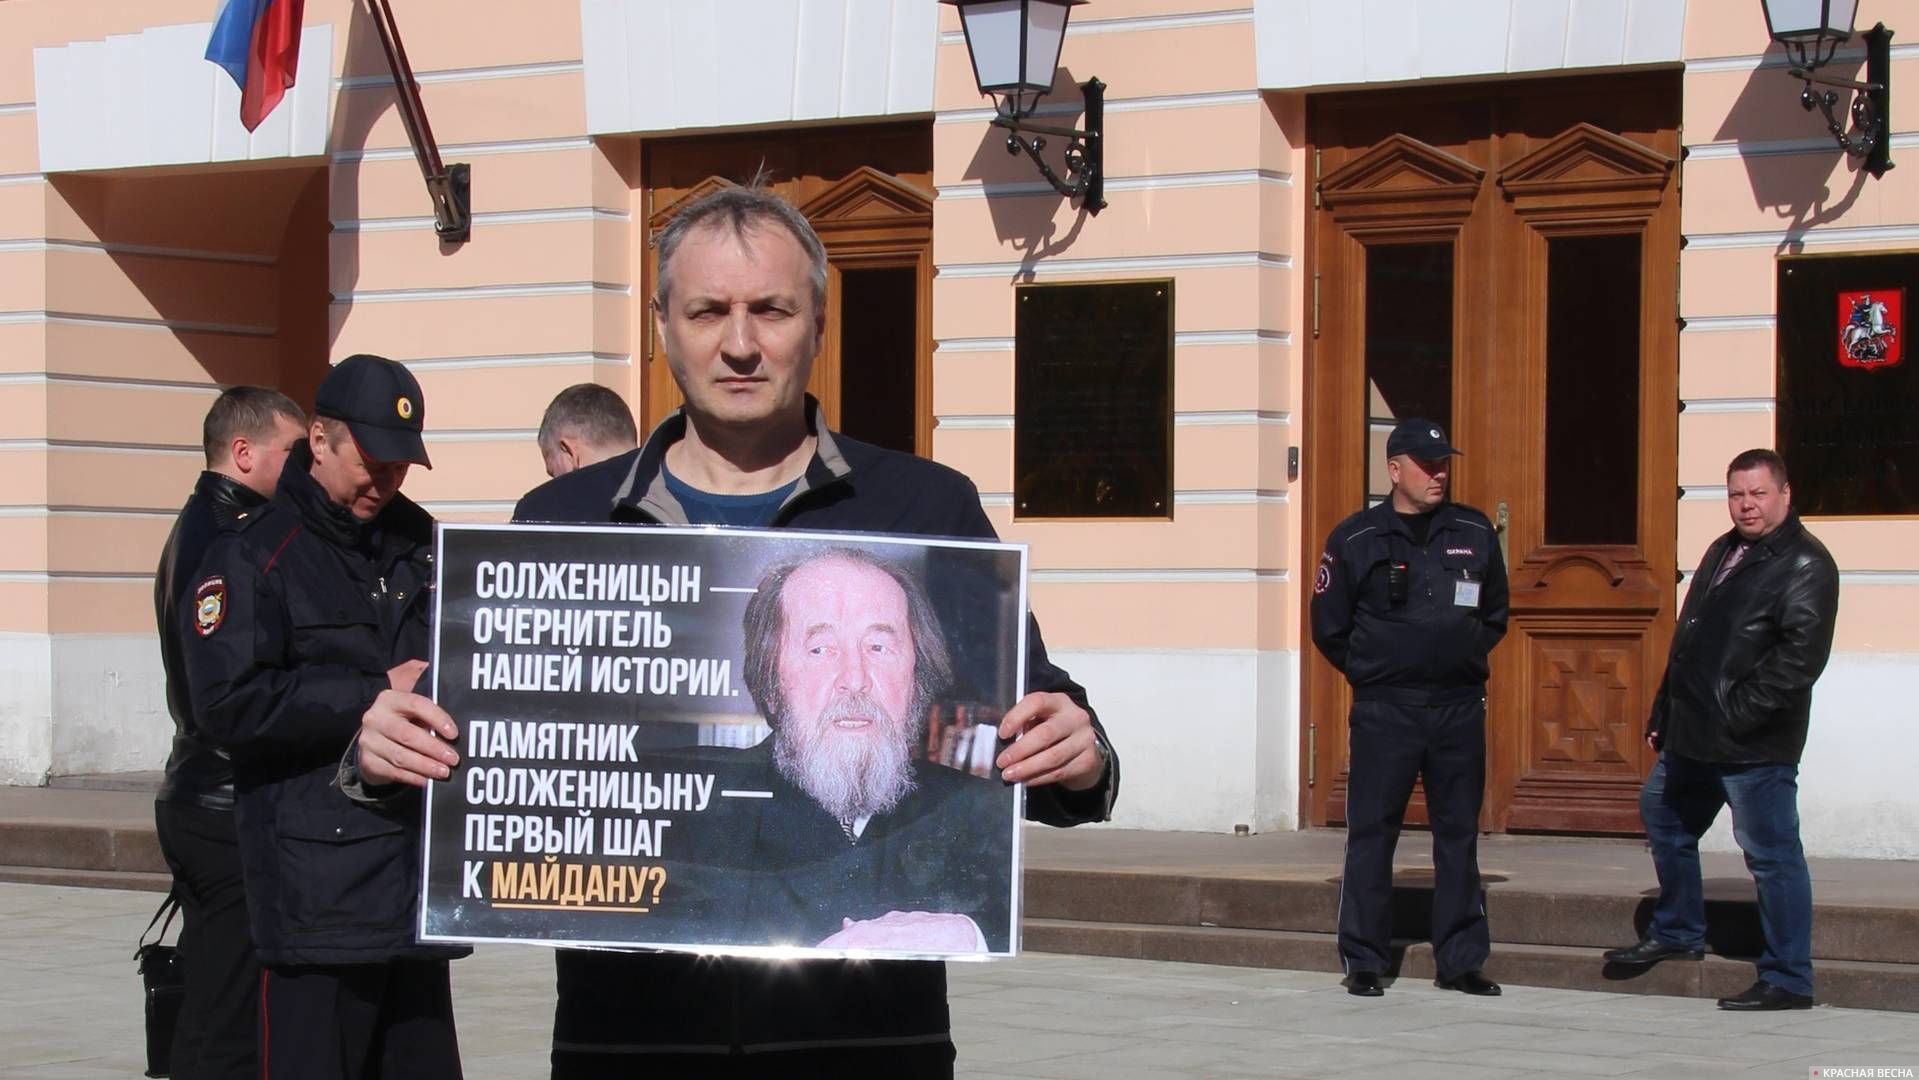 Пикет против установки памятника Солженицыну у здания Мосгордумы 27.04.2018